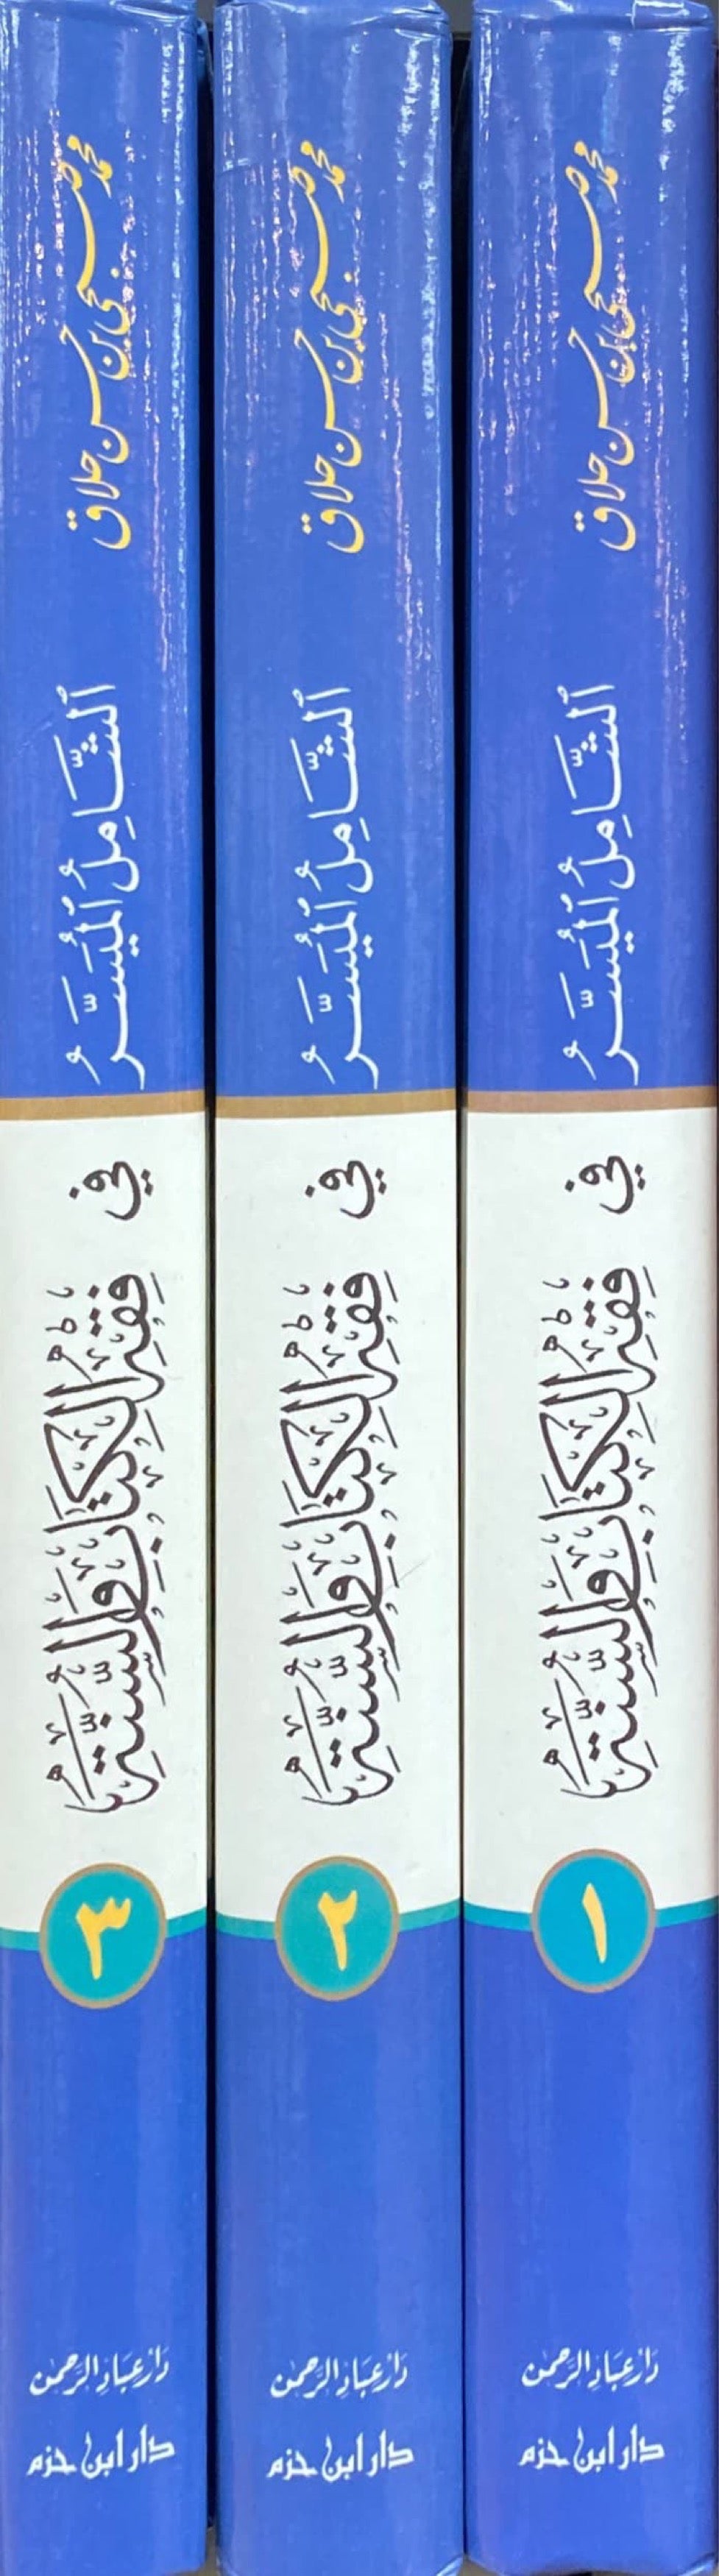 الشامل الميسر في فقه الكتاب و السنة Al Shamil Al Muyasar Fi Fiqh Al Kitabi Was Suna (3 Volume Set)